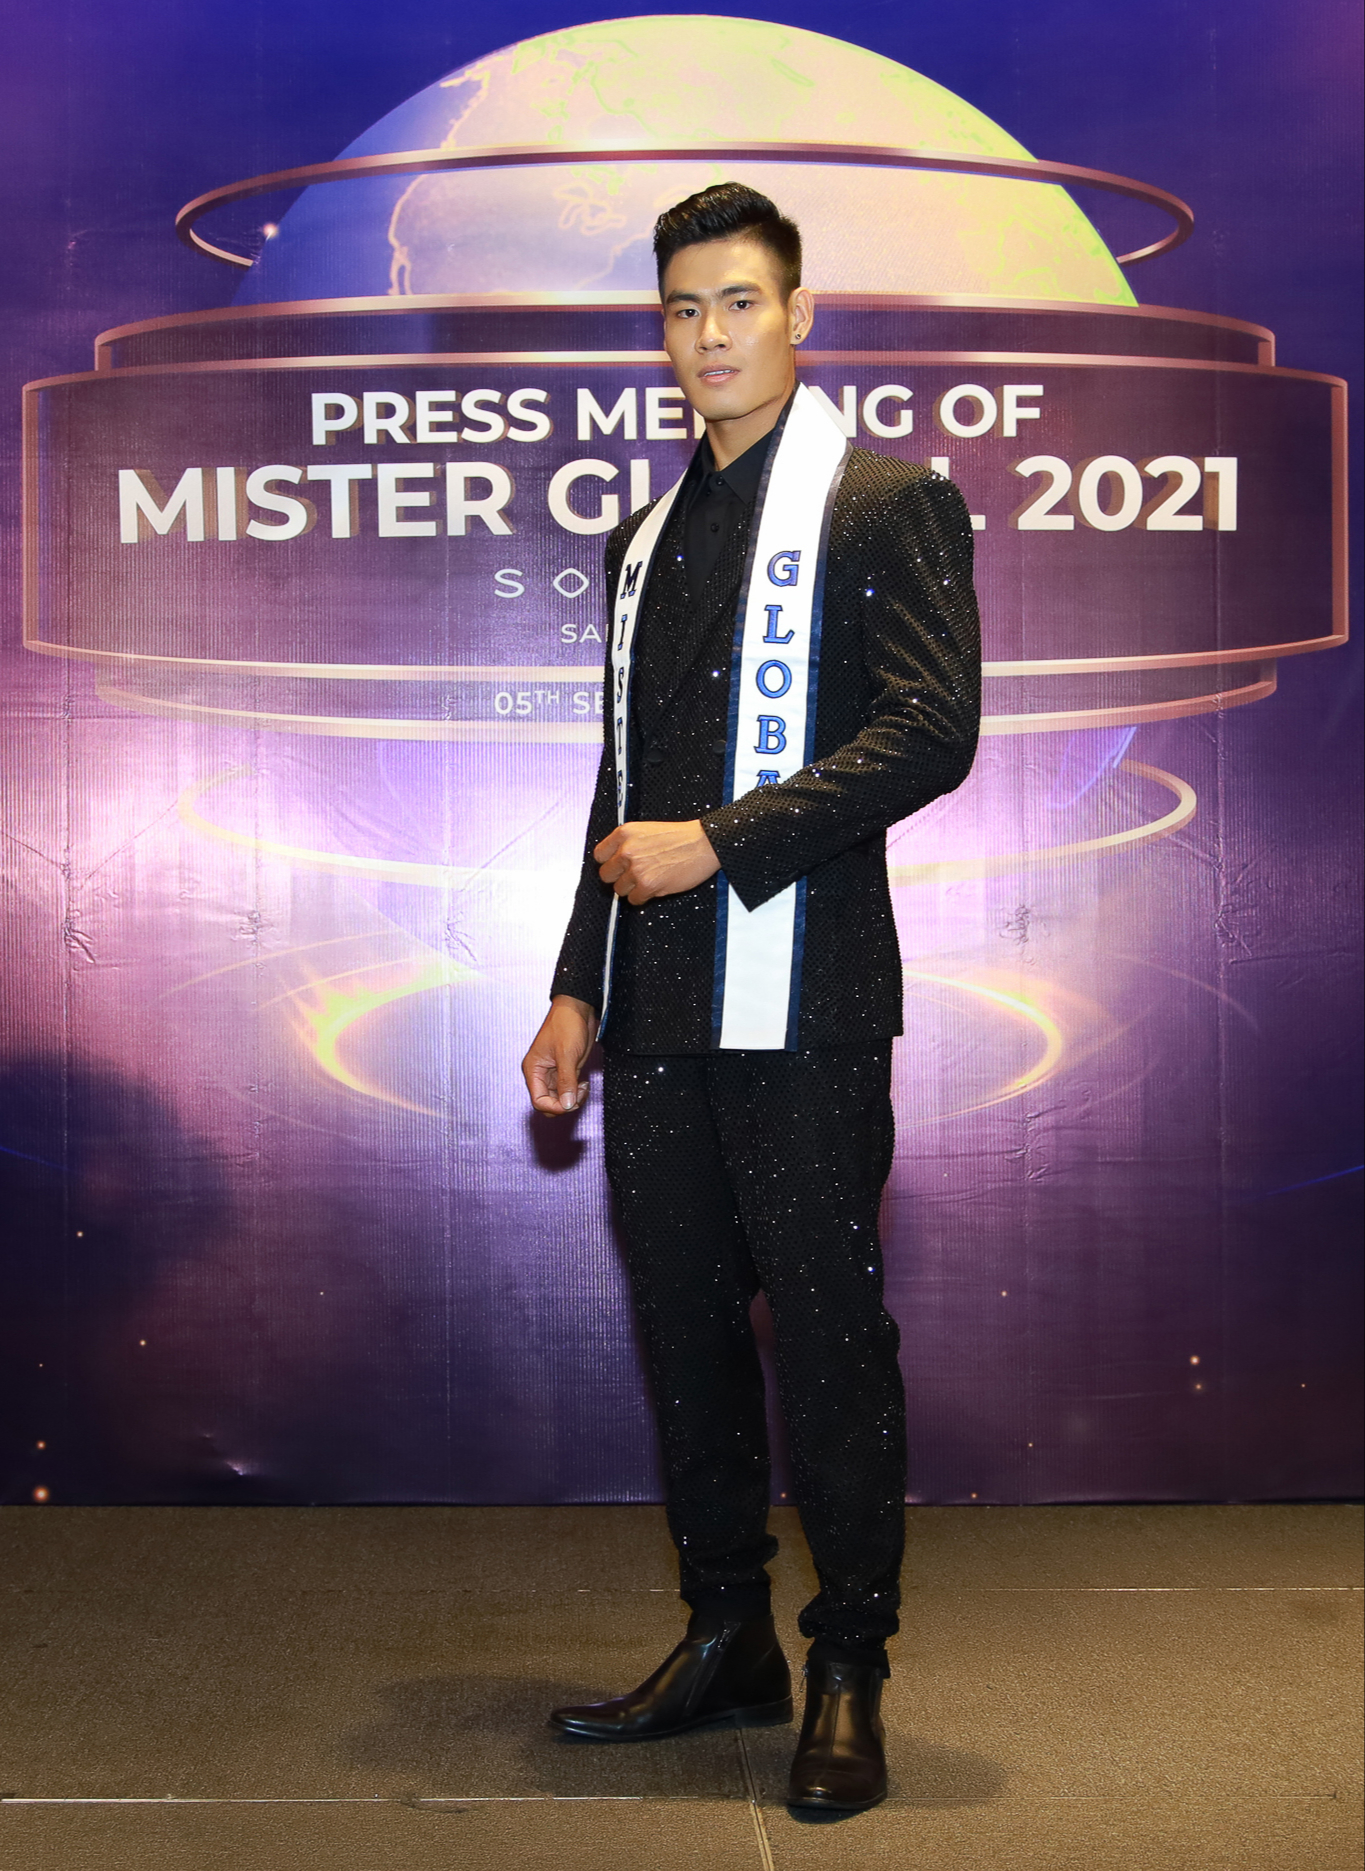 Tước bỏ ngôi vị Nam vương Mister Global 2021 của Miguel Angel Lucas Carrasco, trao lại cho Á vương Danh Chiếu Linh - Ảnh 4.